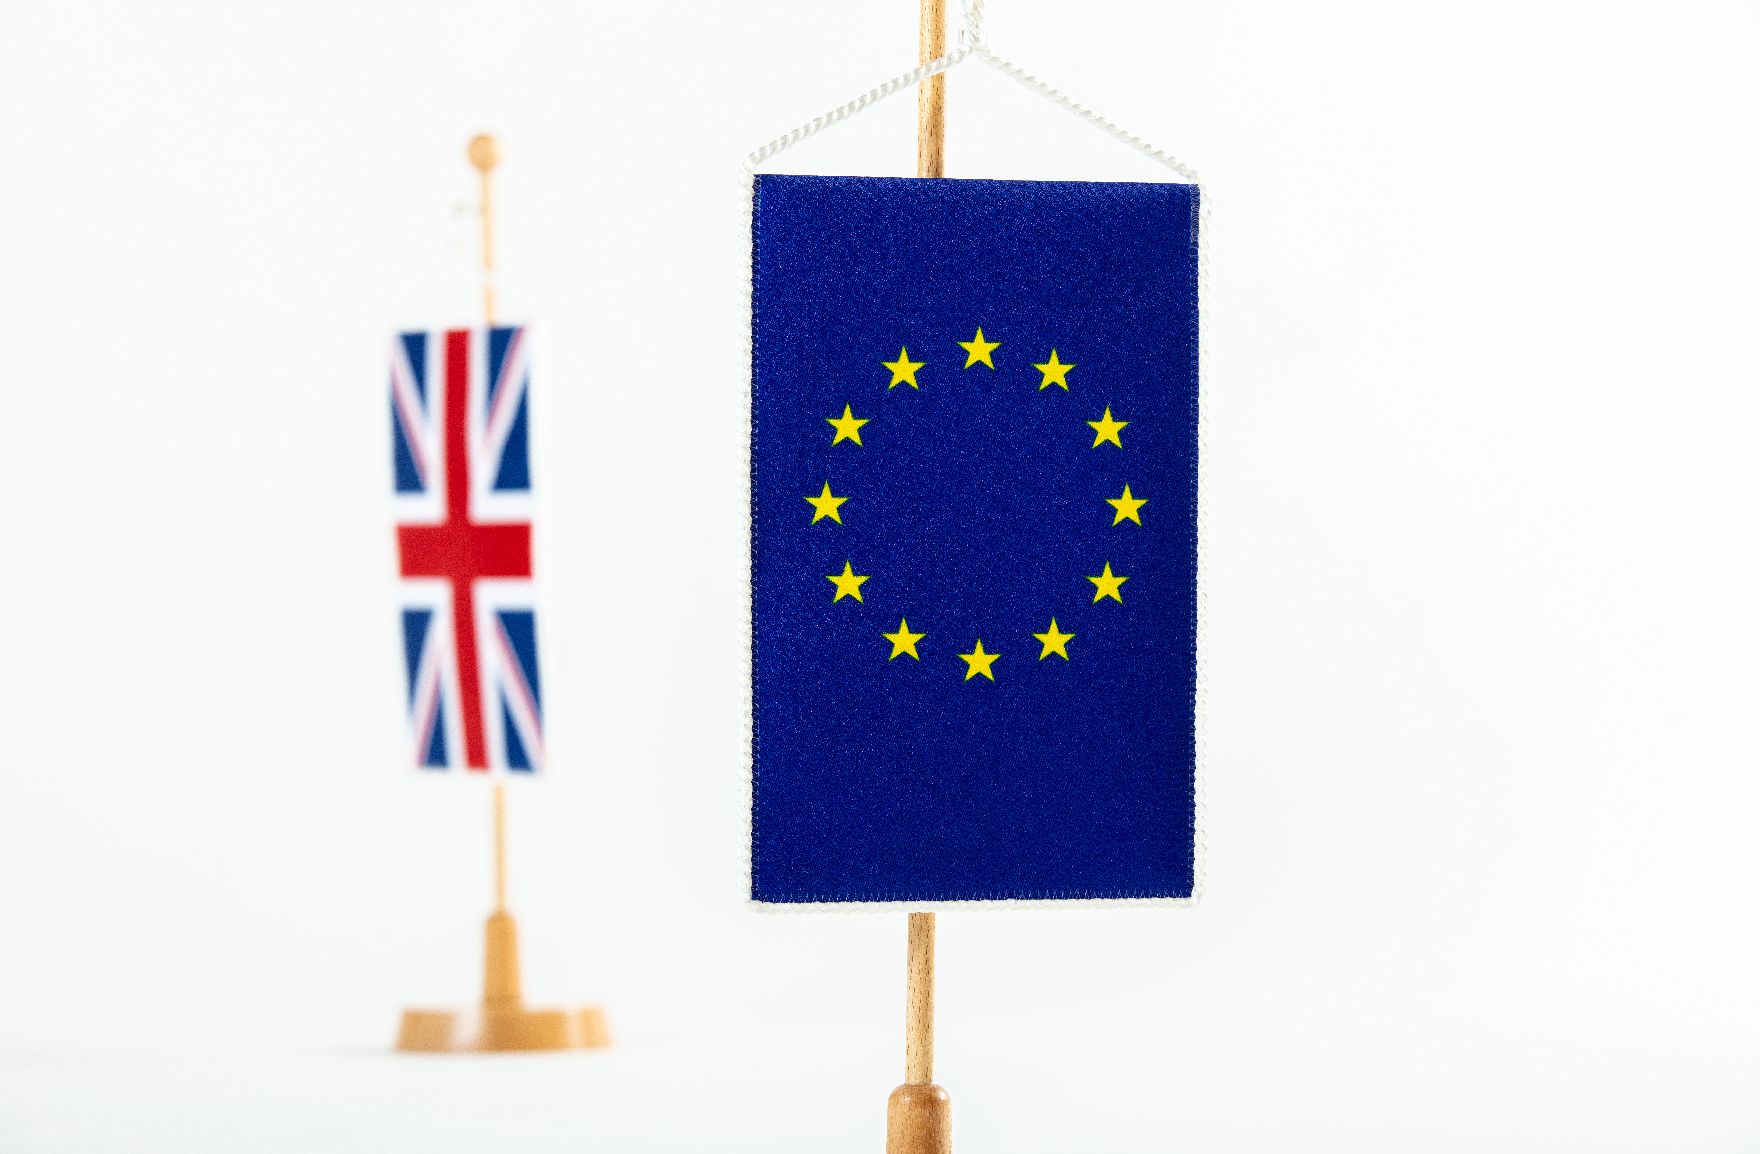 Symbolfoto vom Brexit. Schlagwörter: Brexit, Flaggen, Fahnen, EU, Mitgliedsstaaten, Länder, Großbritannien, England, Rat für Allgemeine Angelegenheiten, GAC